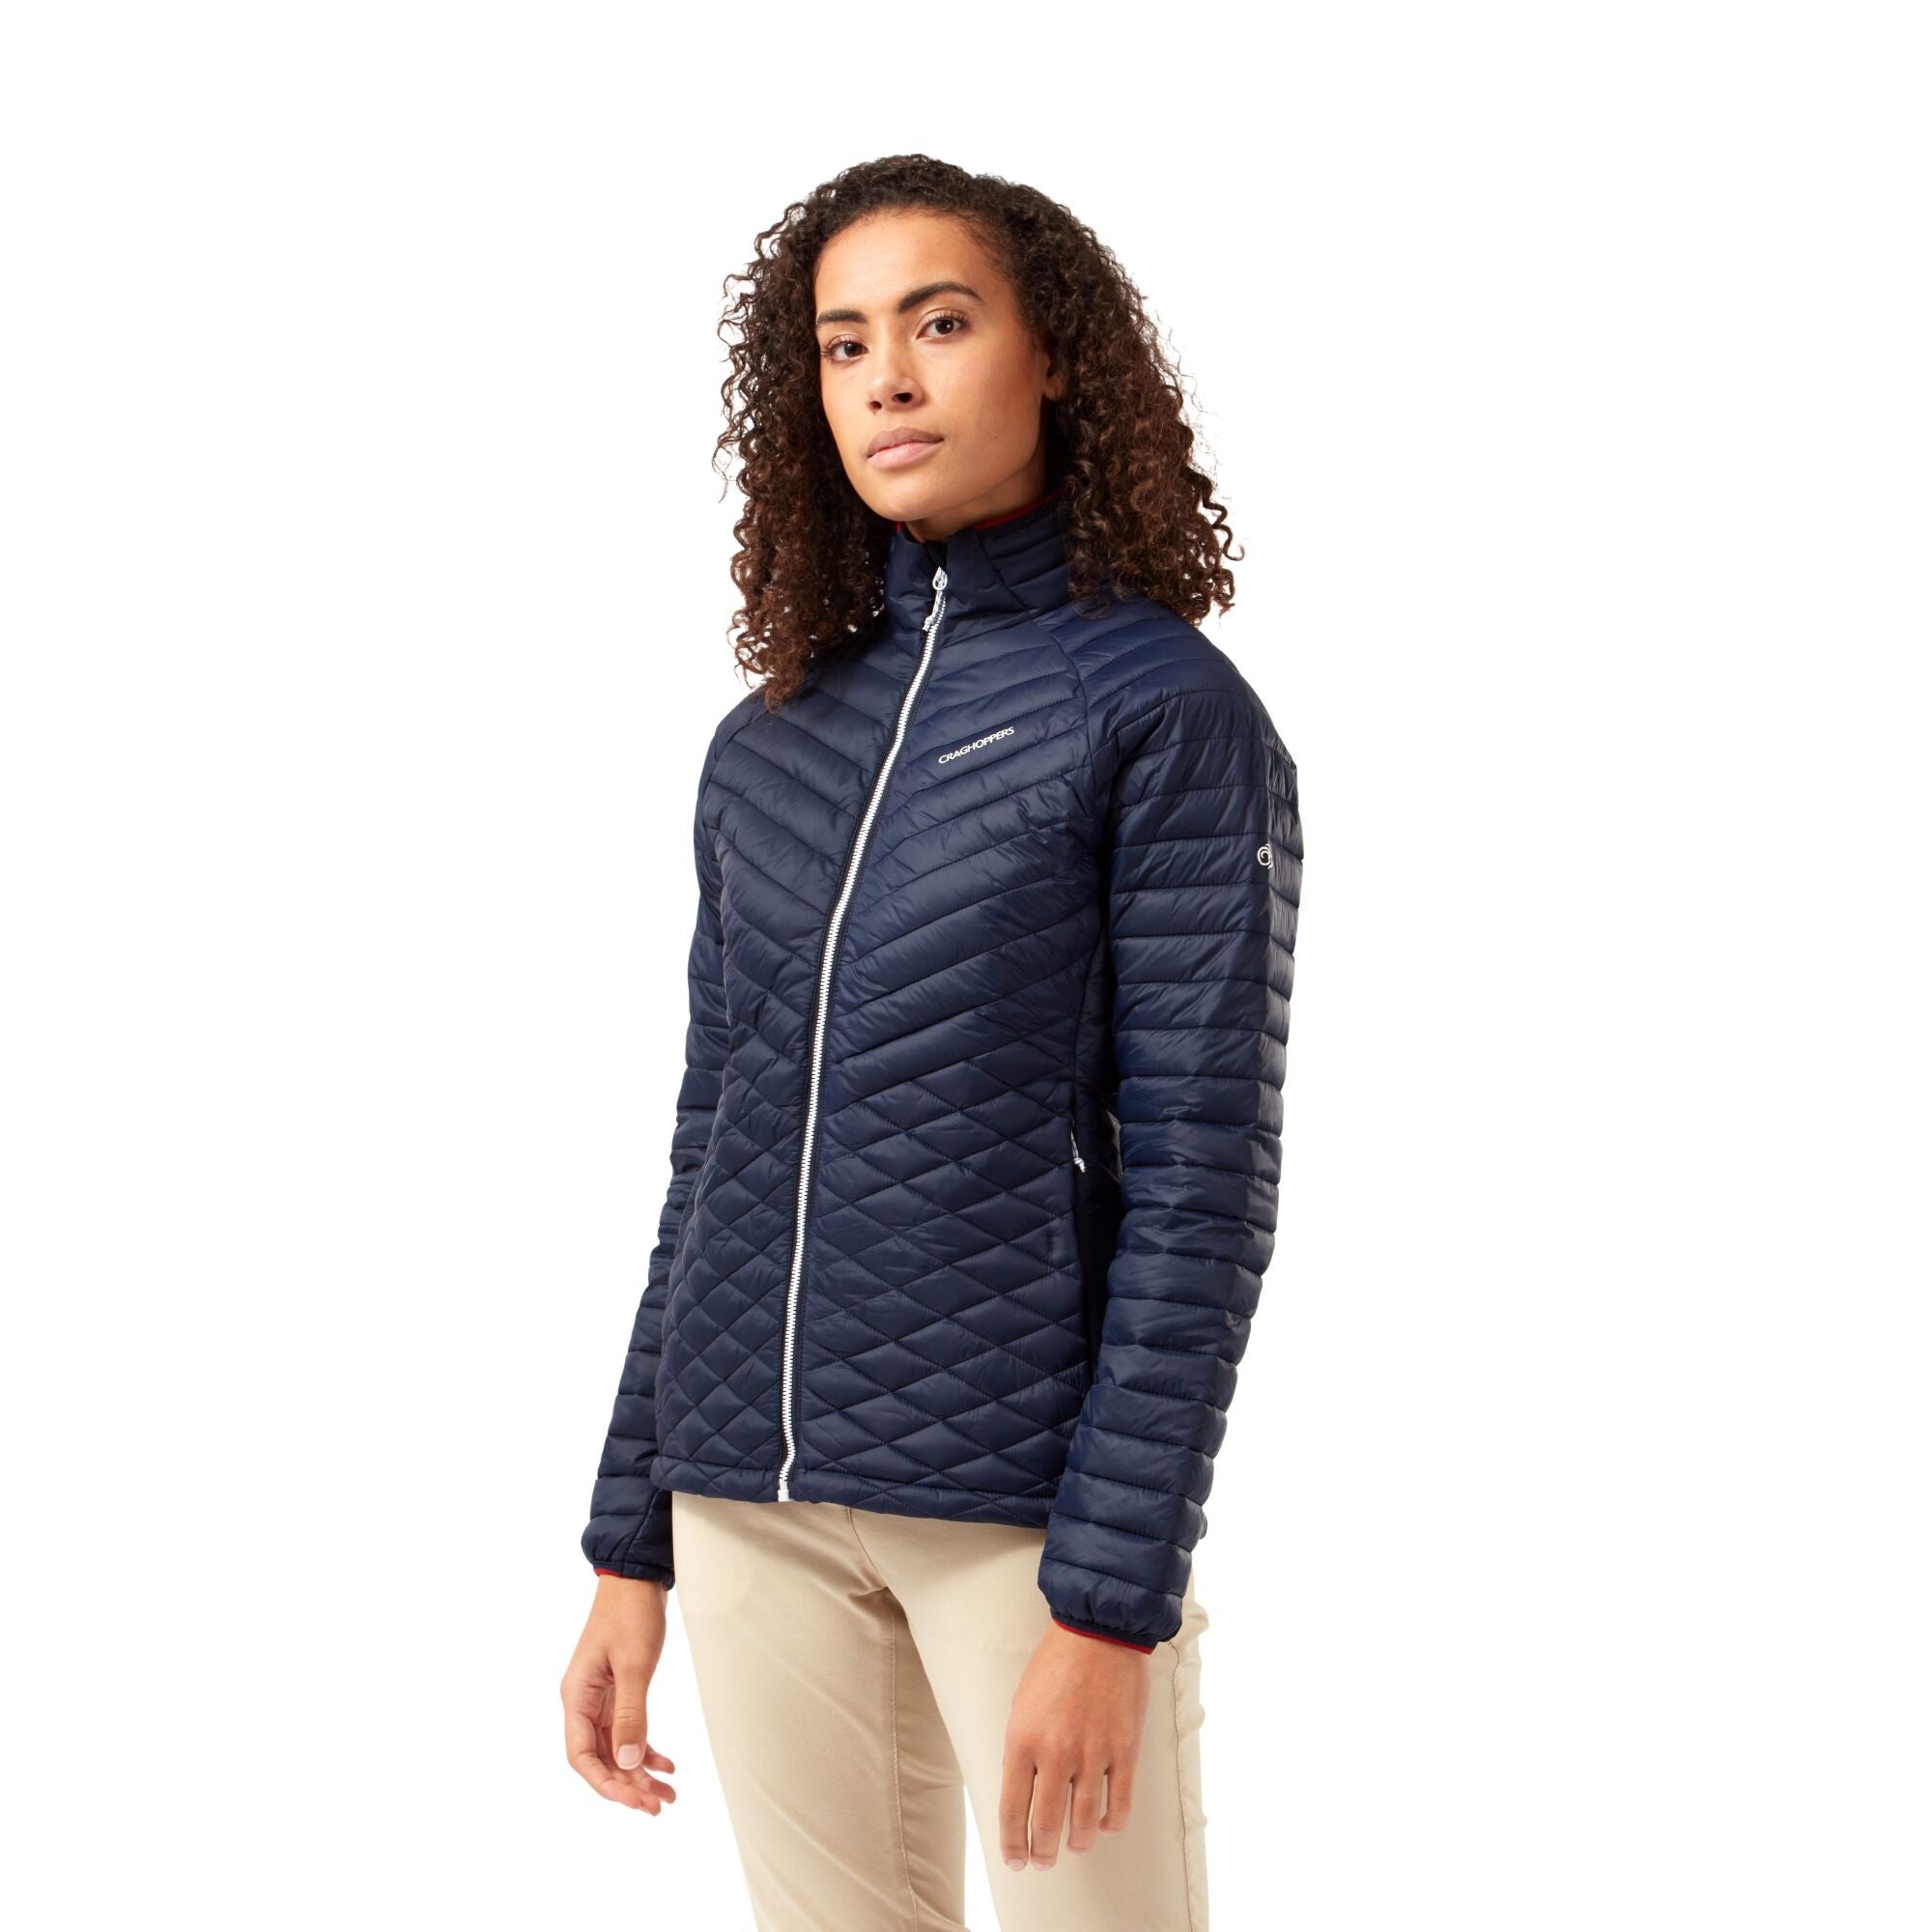 Women's ExpoLite Jacket | Blue Navy